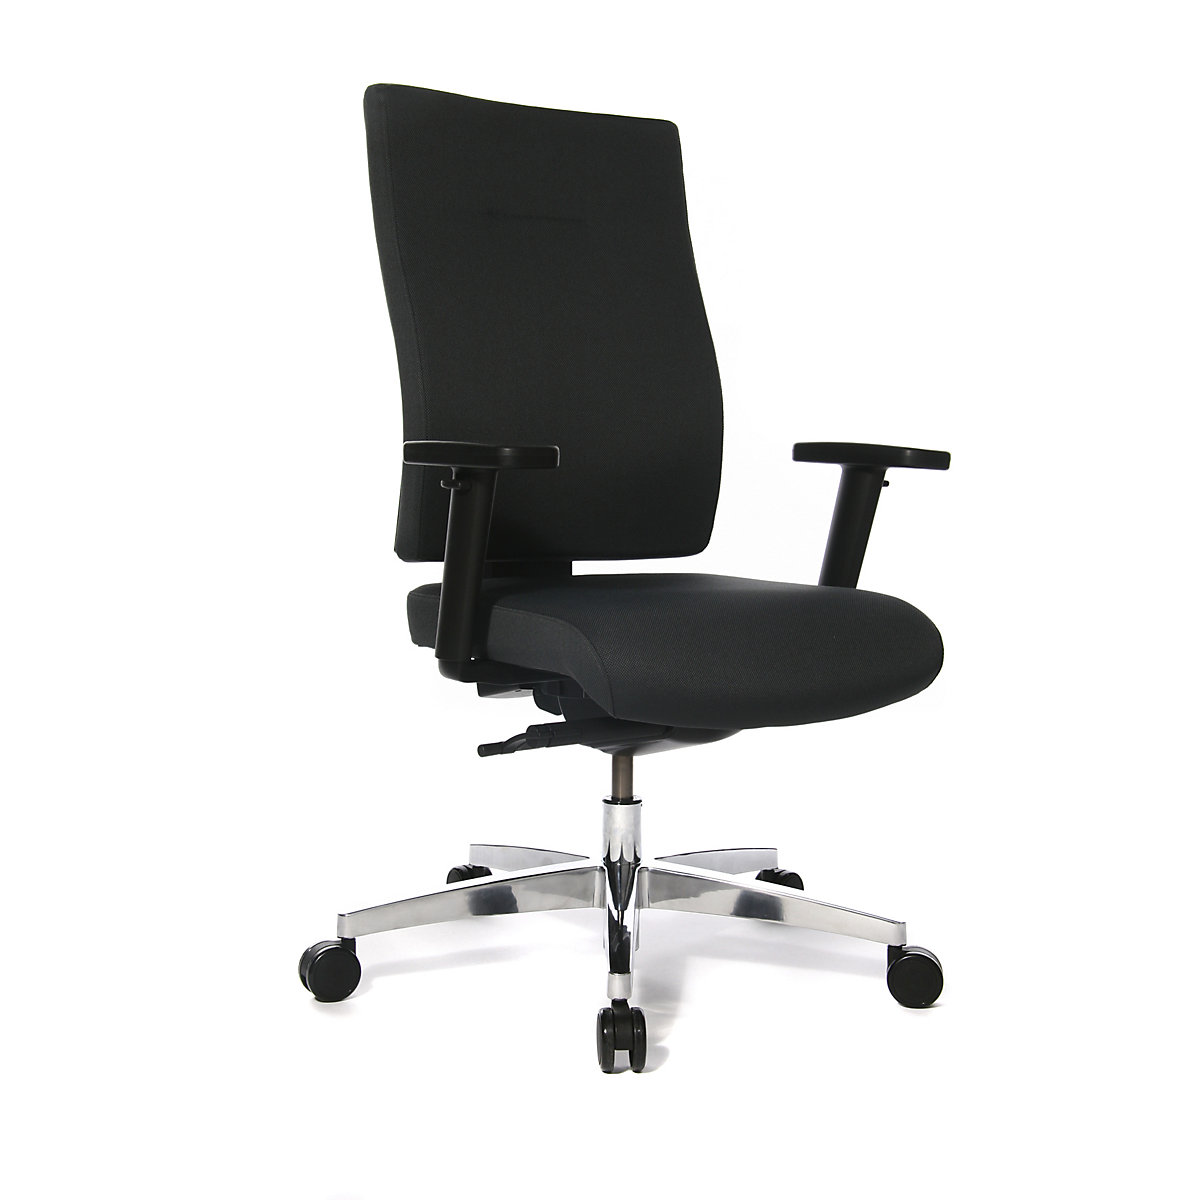 Cadeira giratória de escritório PROFI STAR 15 – Topstar, encosto ergonómico, preto-4